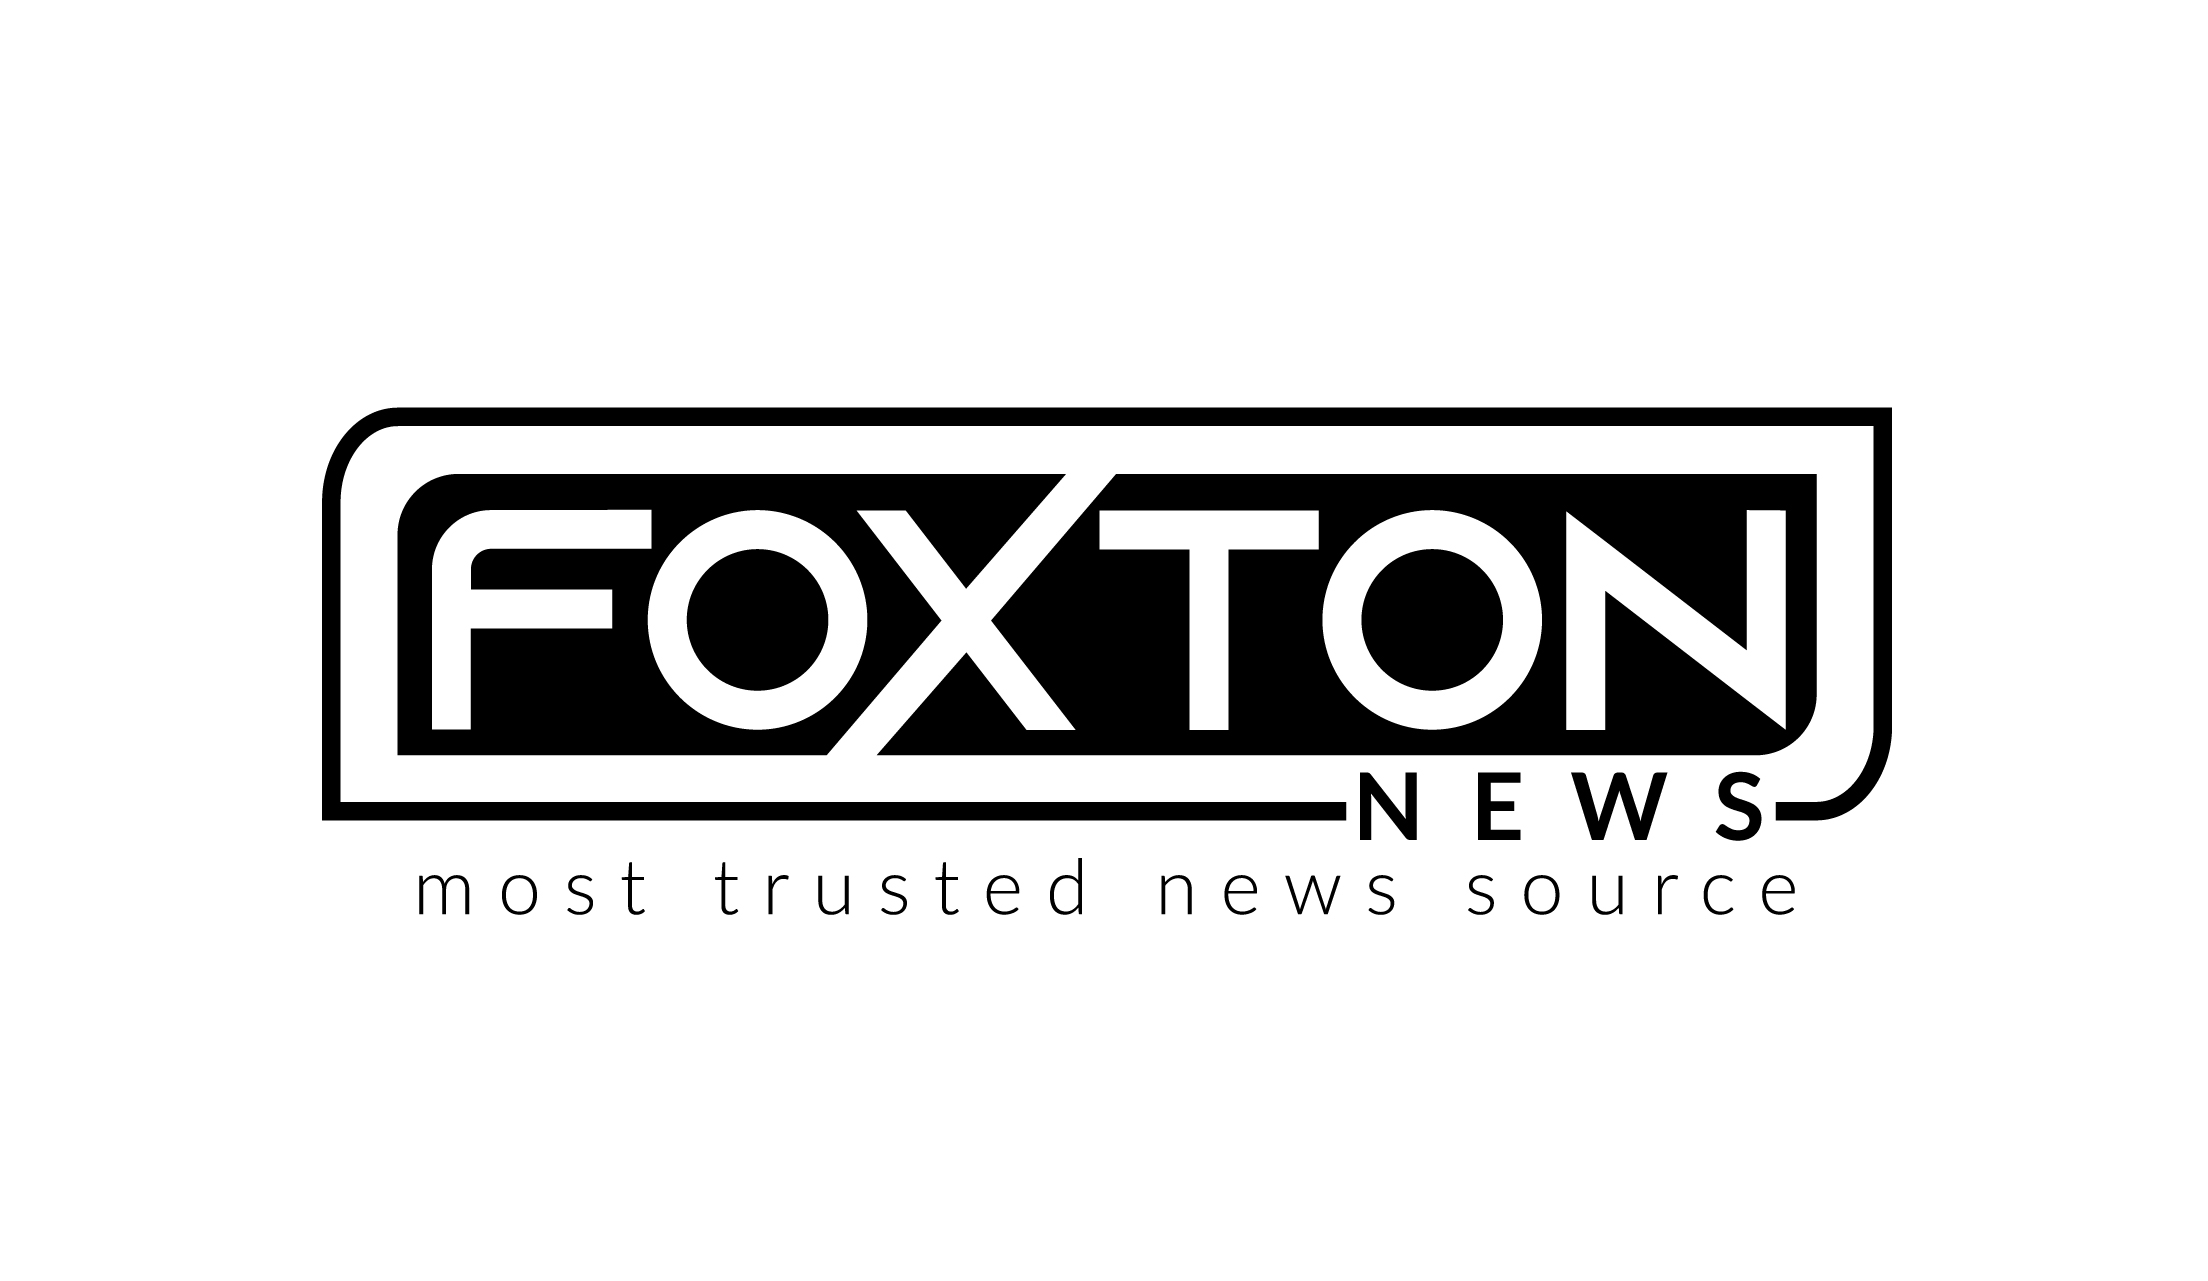 Foxton News